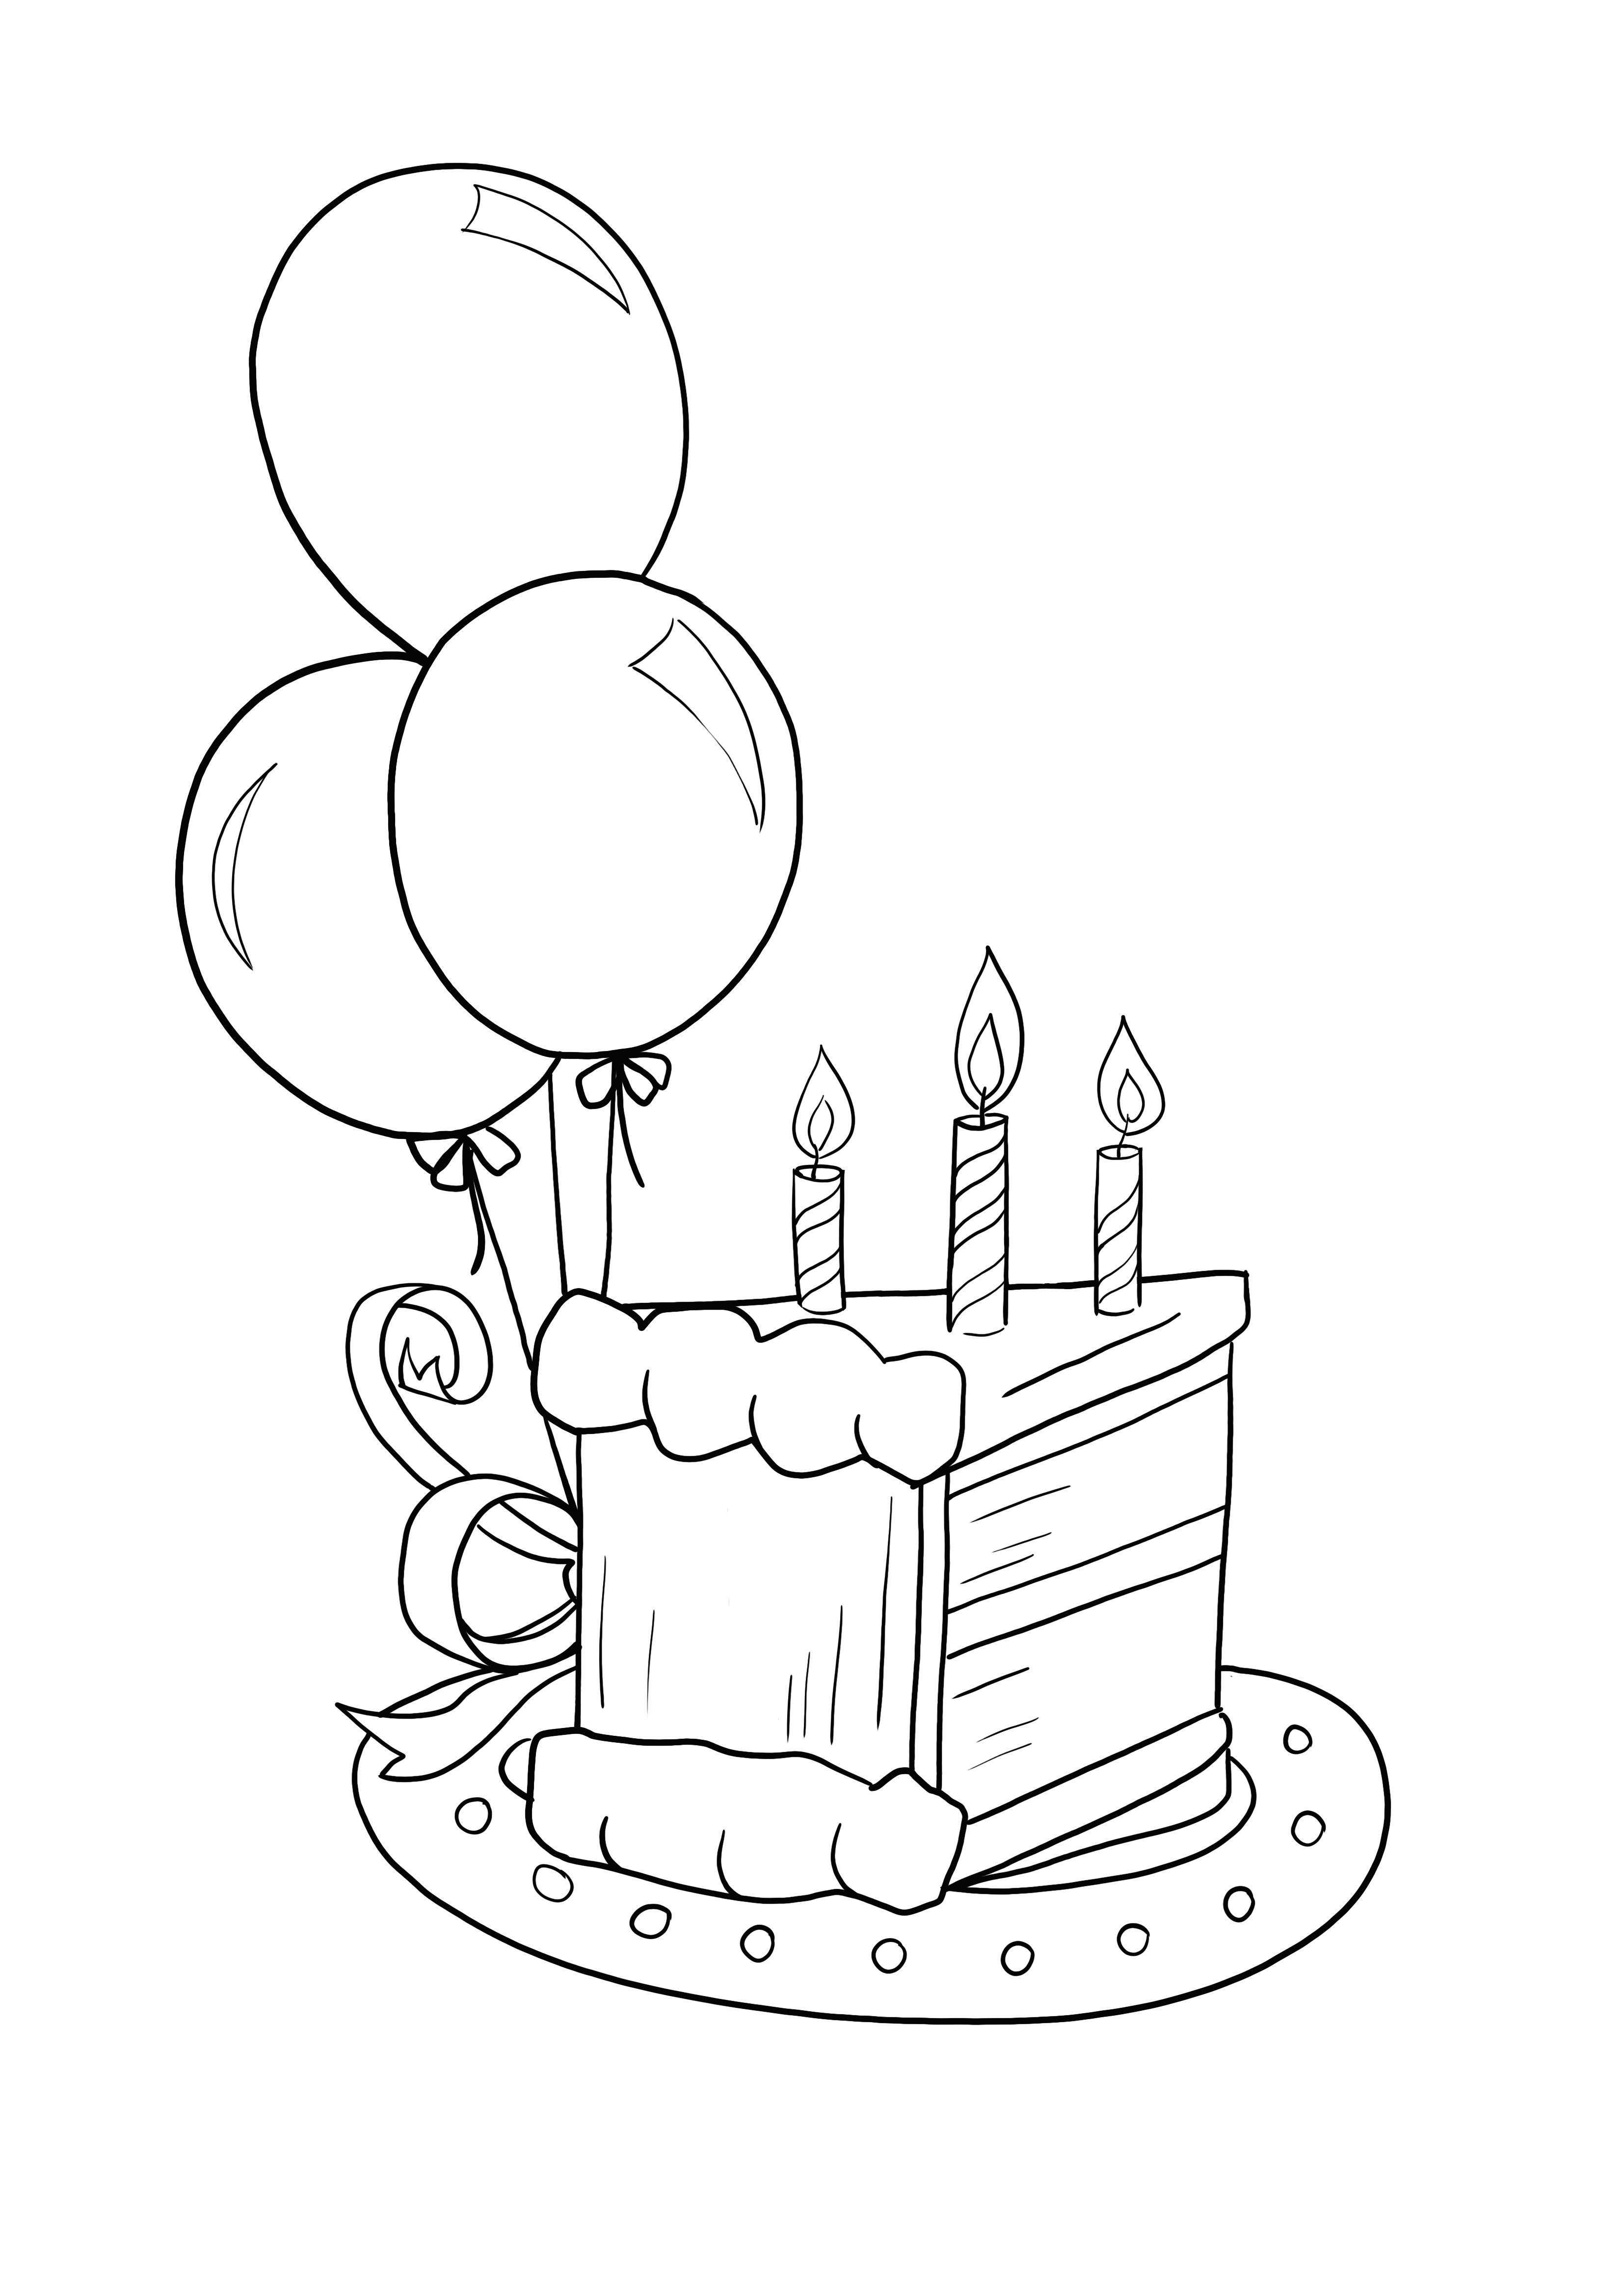 誕生日のケーキを無料で印刷してページを着色